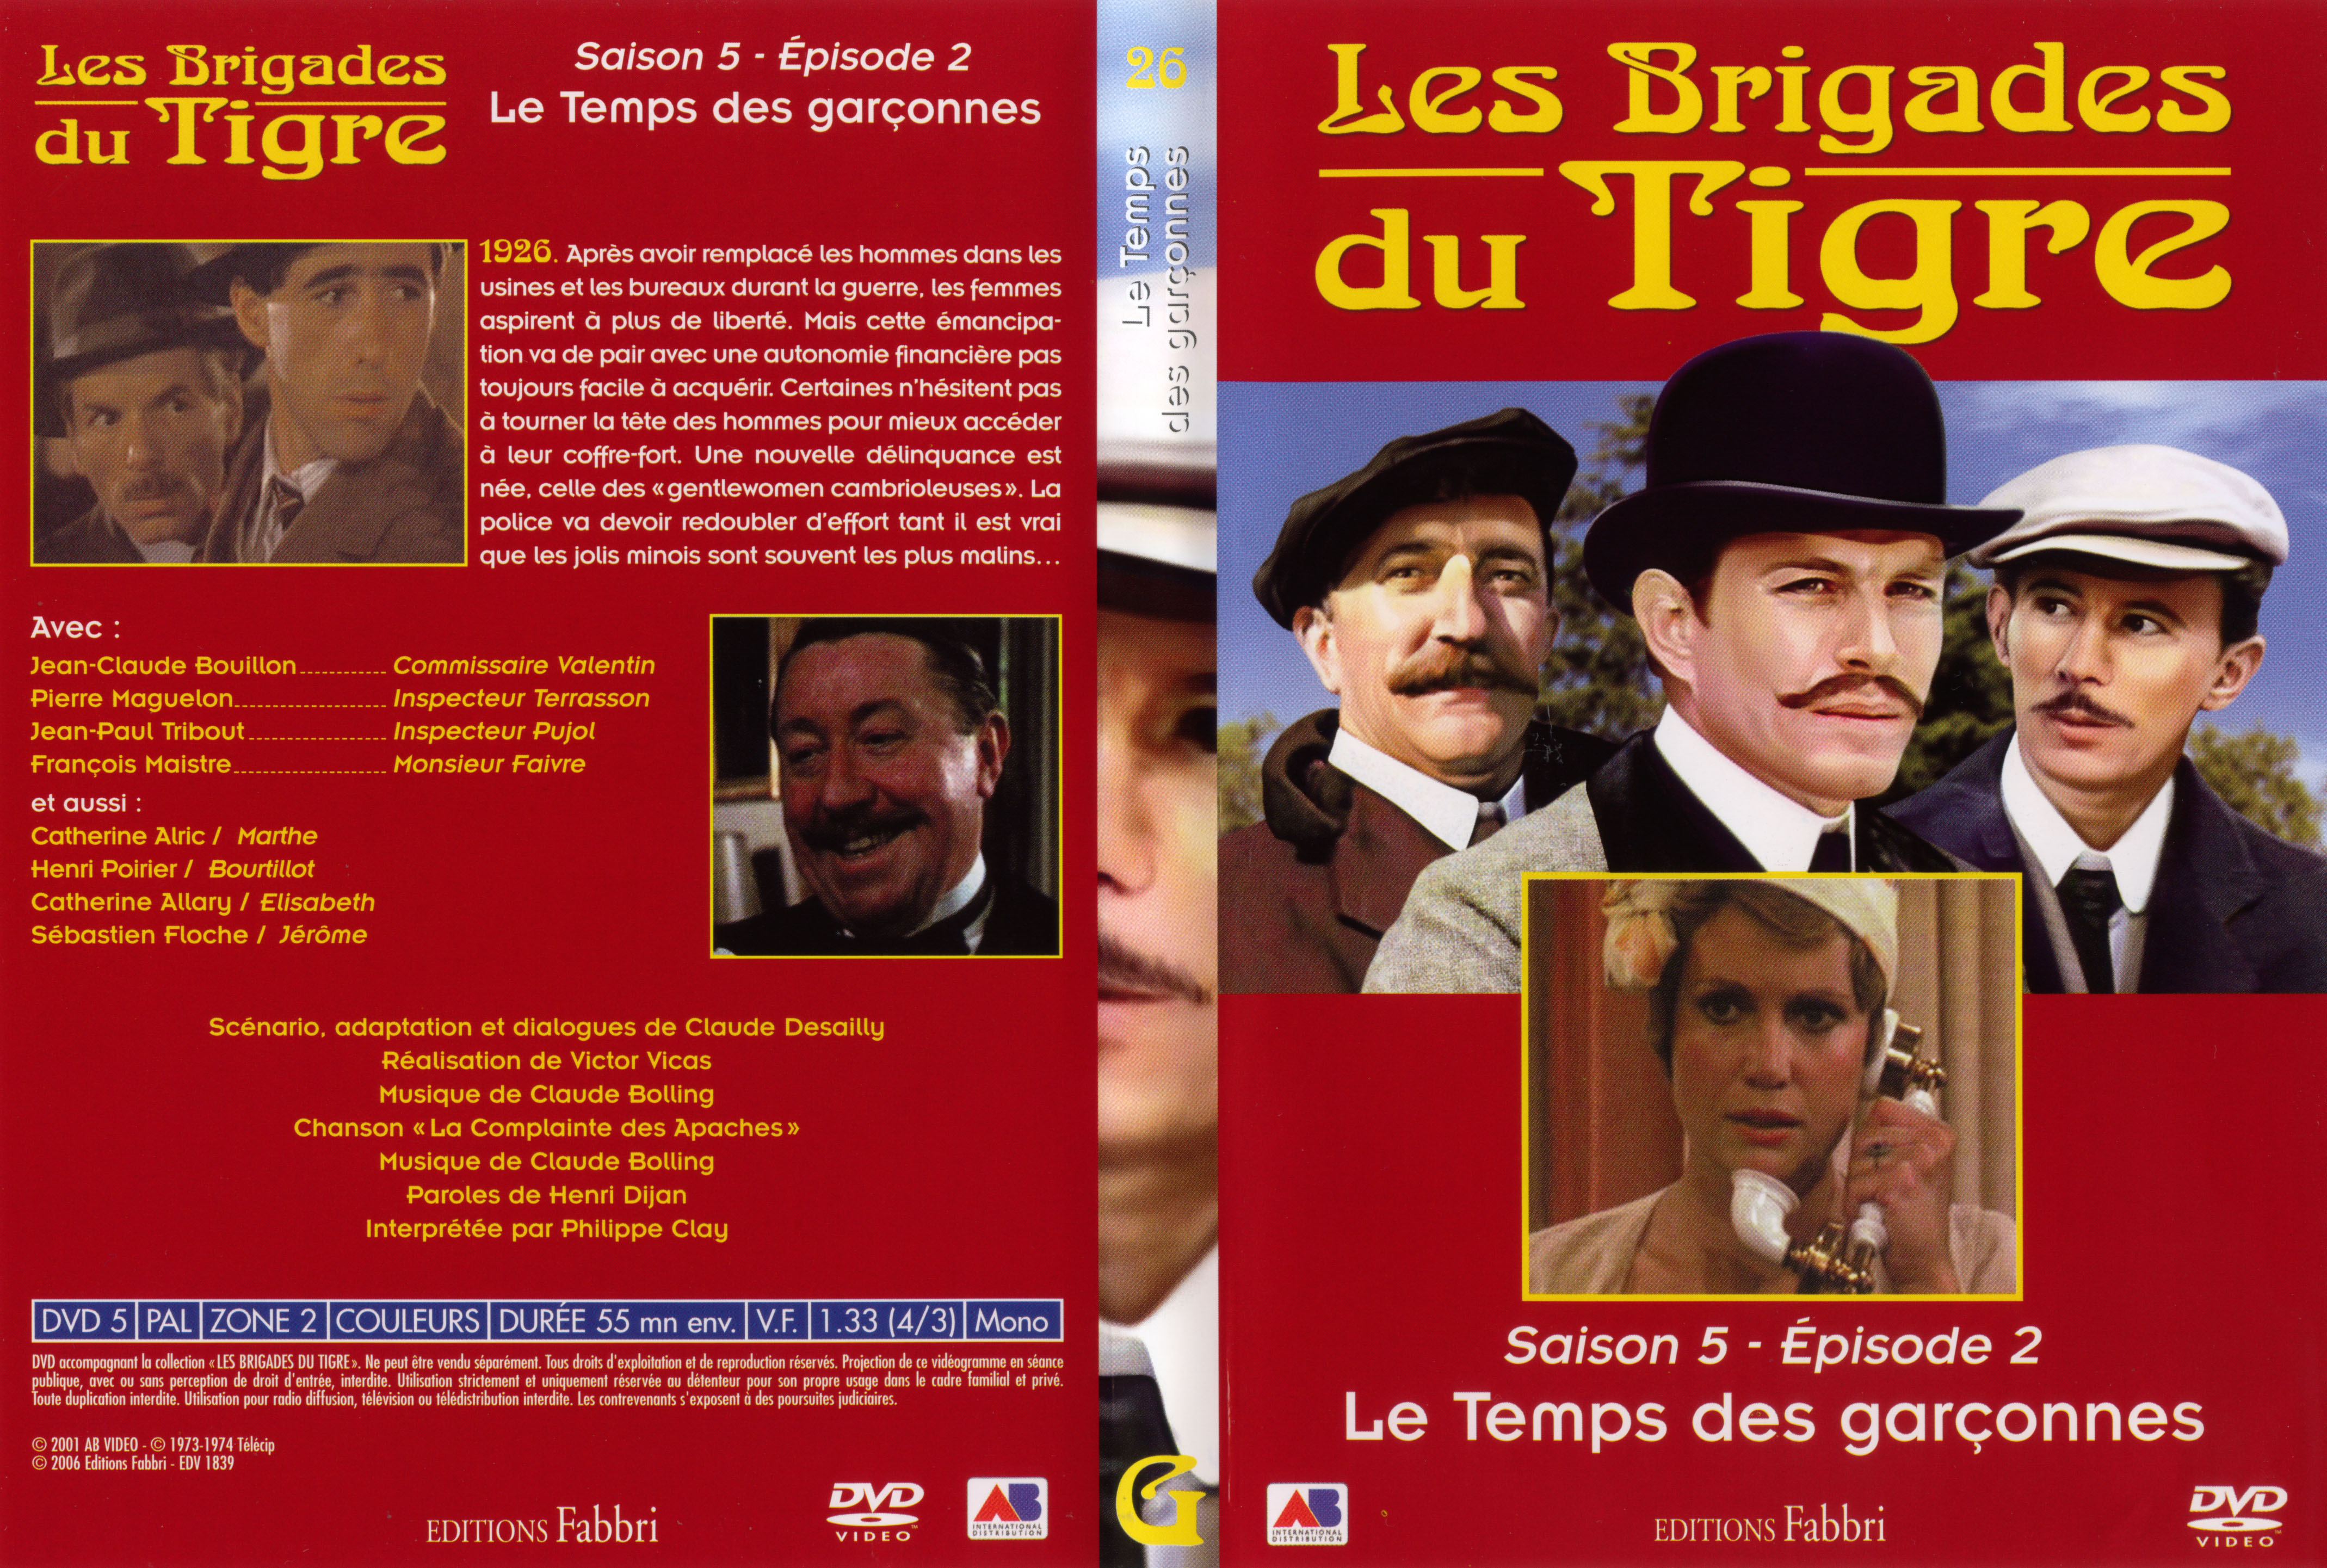 Jaquette DVD Les brigades du tigre saison 5 épisode 2